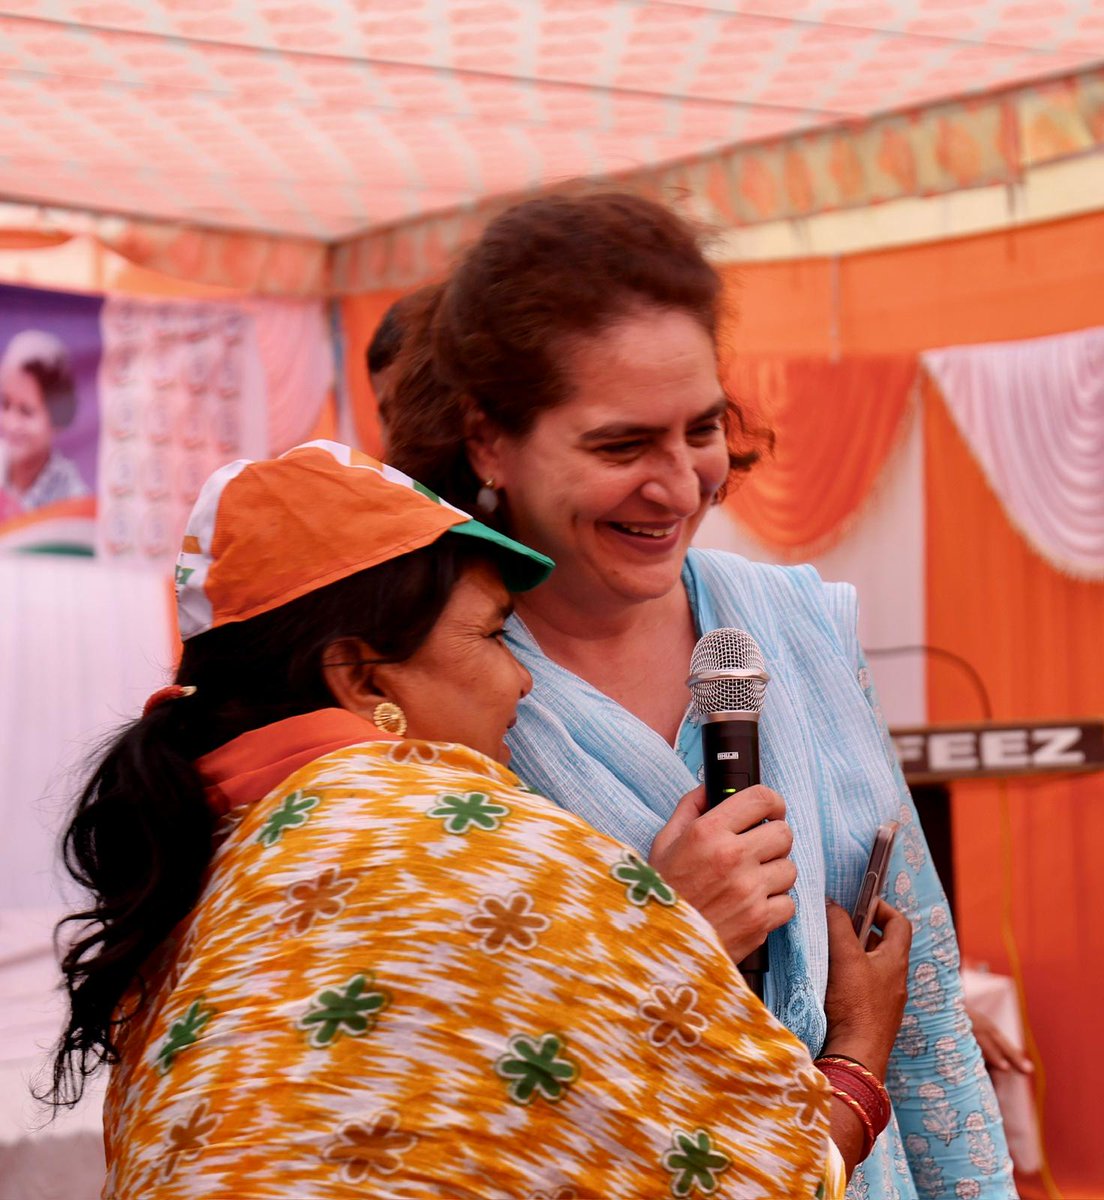 ये तस्वीर रायबरेली से है !
महिलाएं सीधे आकर @priyankagandhi के गले लग जा रही हैं ! 
नेता ऐसे होते हैं ! ❤